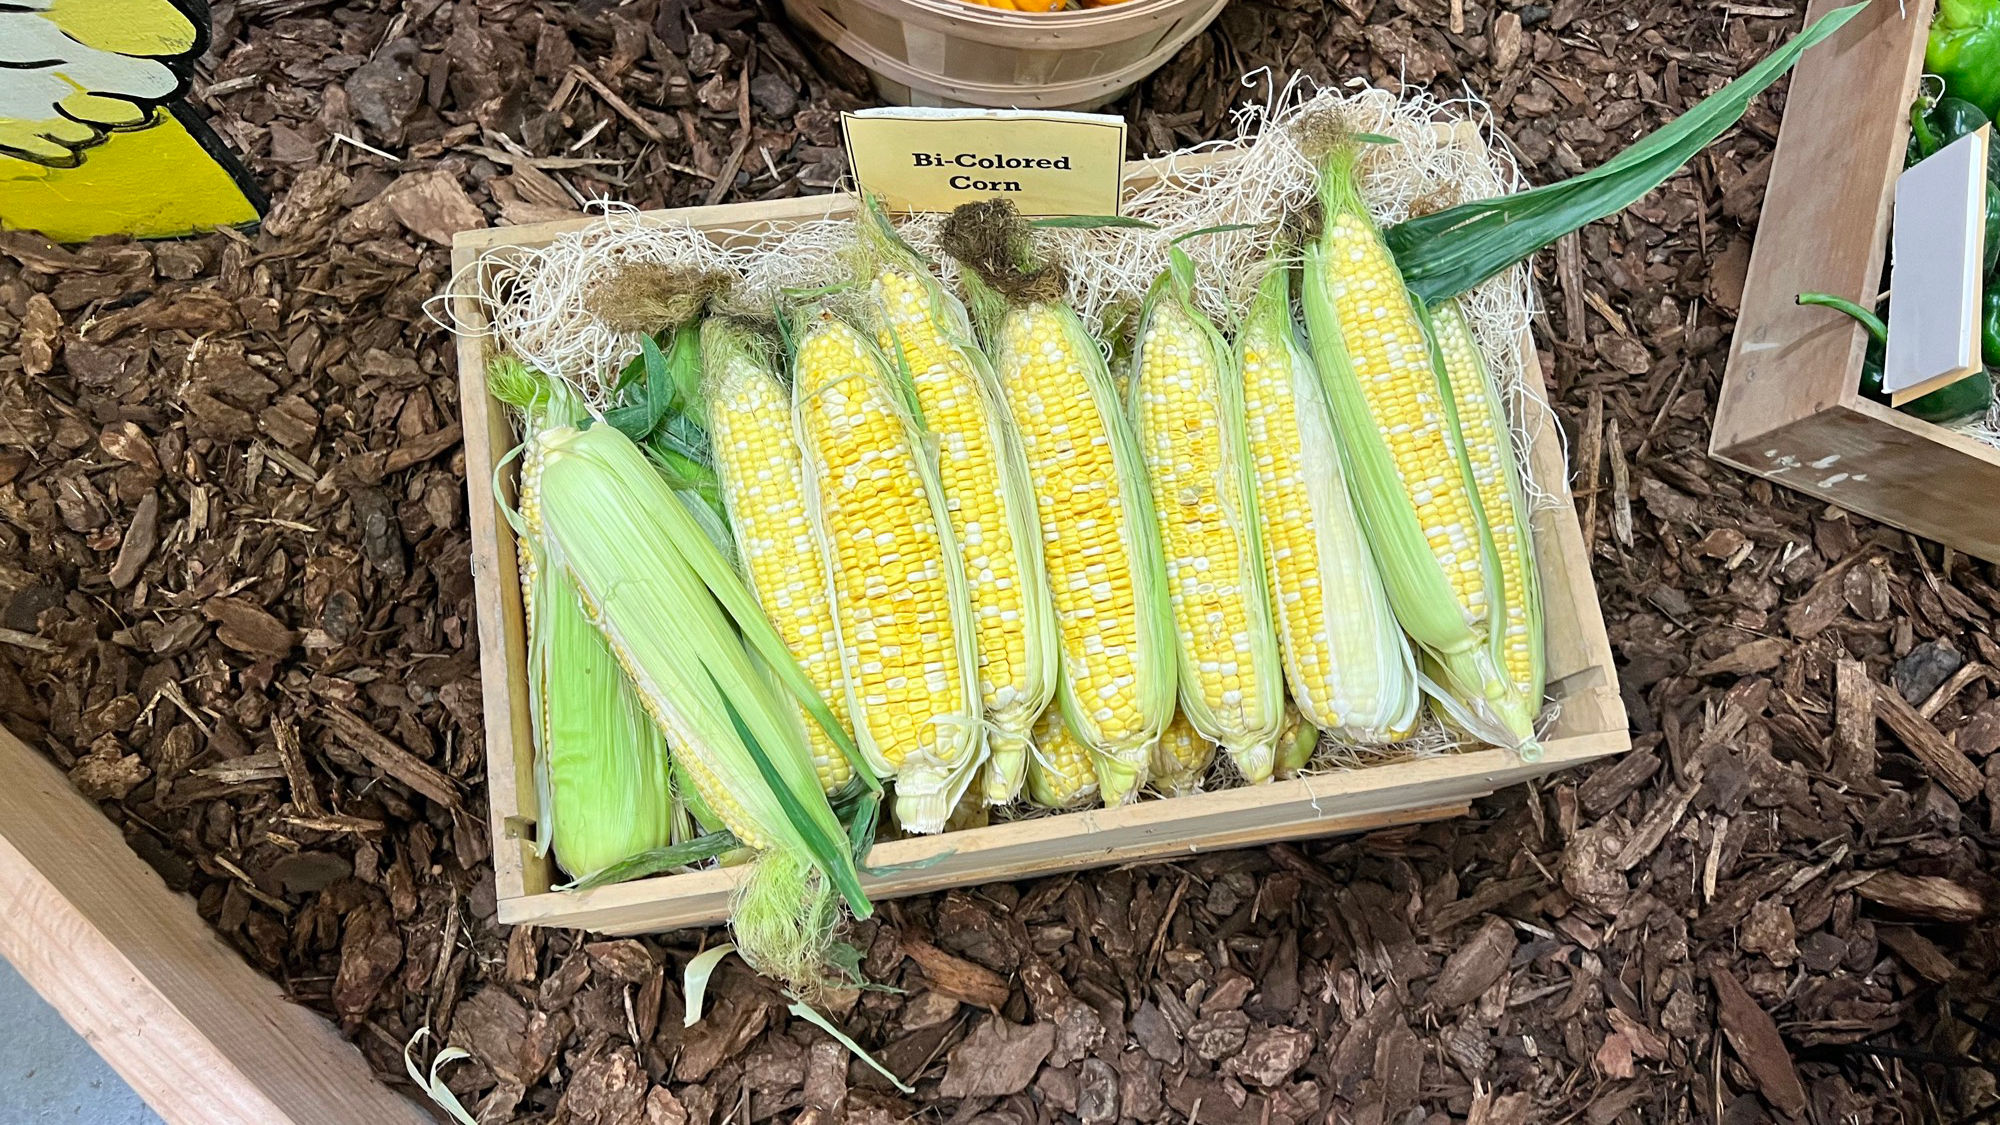 Underwood Family Farms Bi-Colored Corn